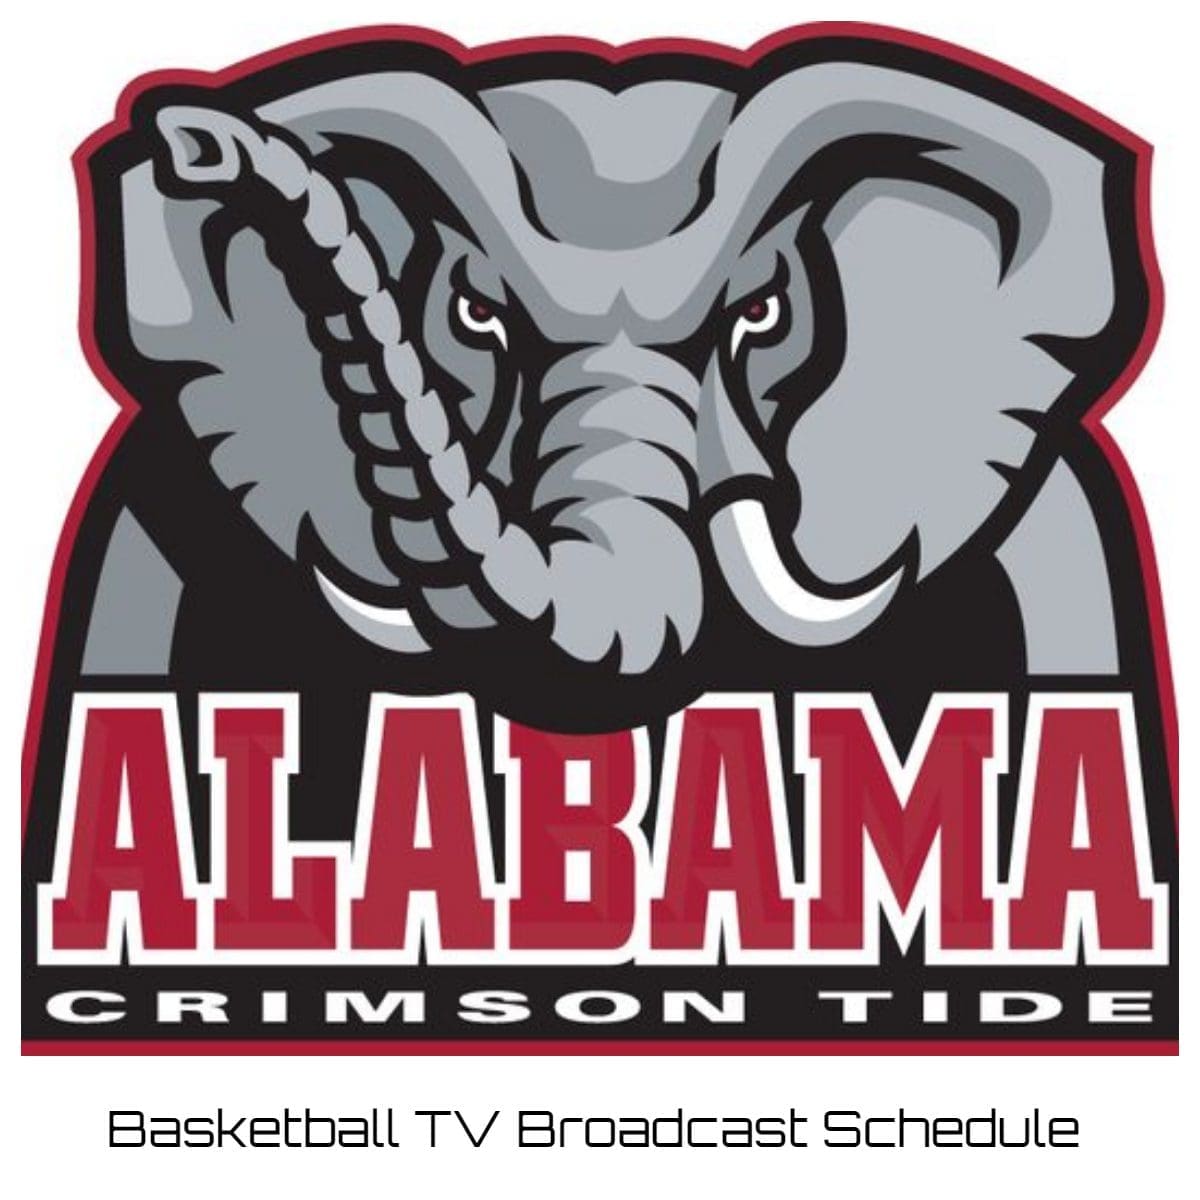 Alabama Crimson Tide Basketball TV Broadcast Schedule